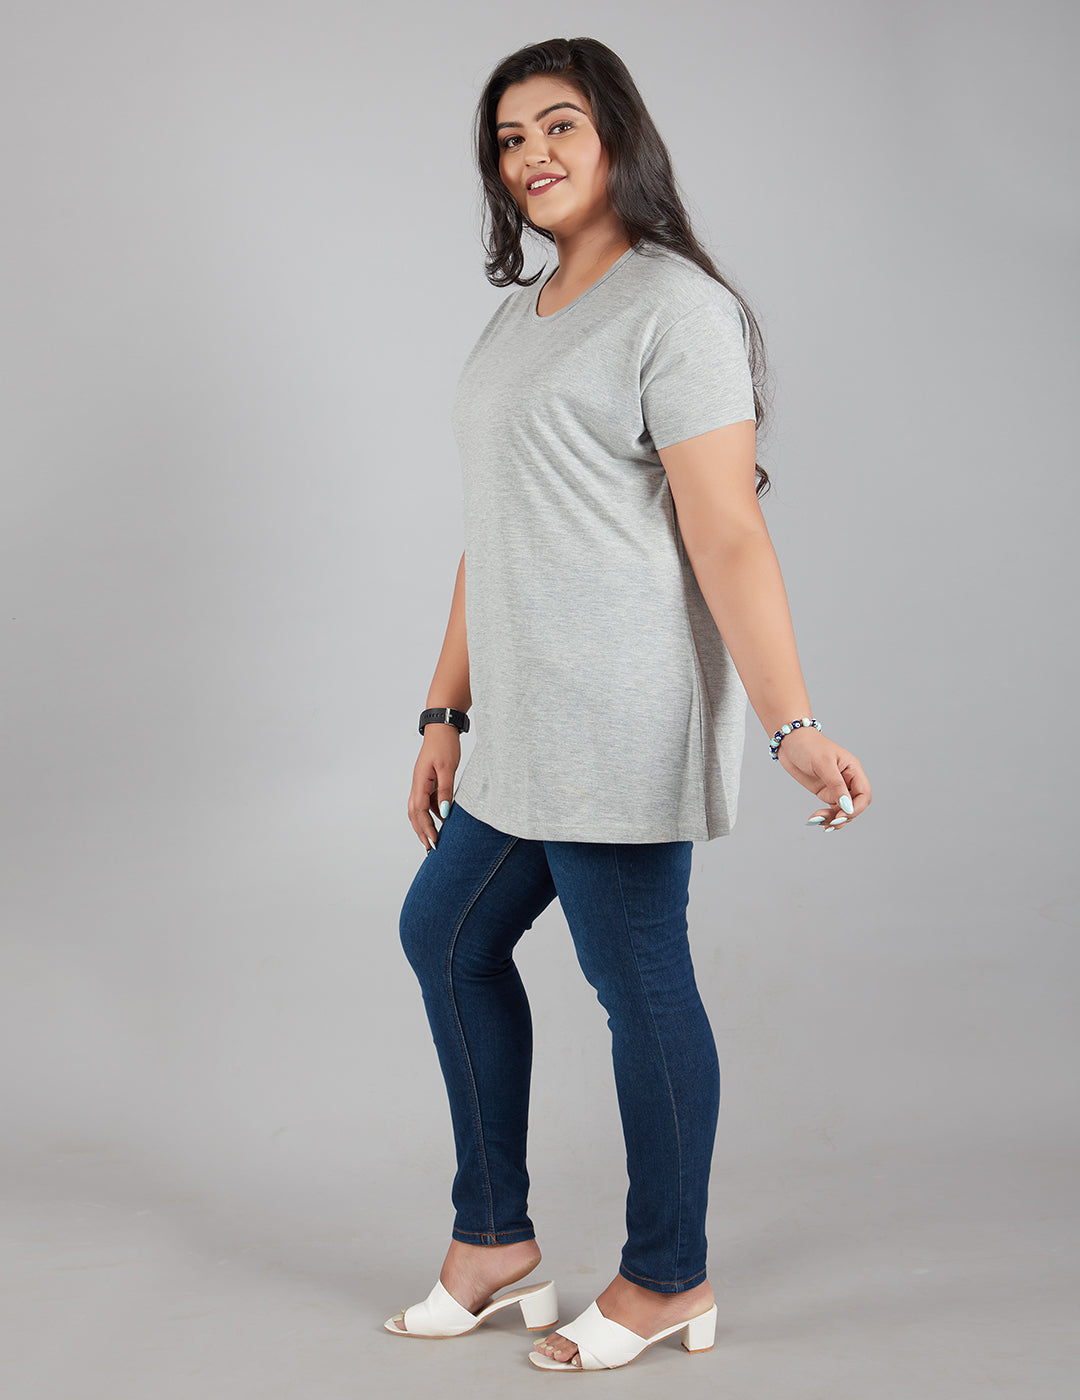 Plus Size Plain Cotton T-Shirt For Women - Grey At Online